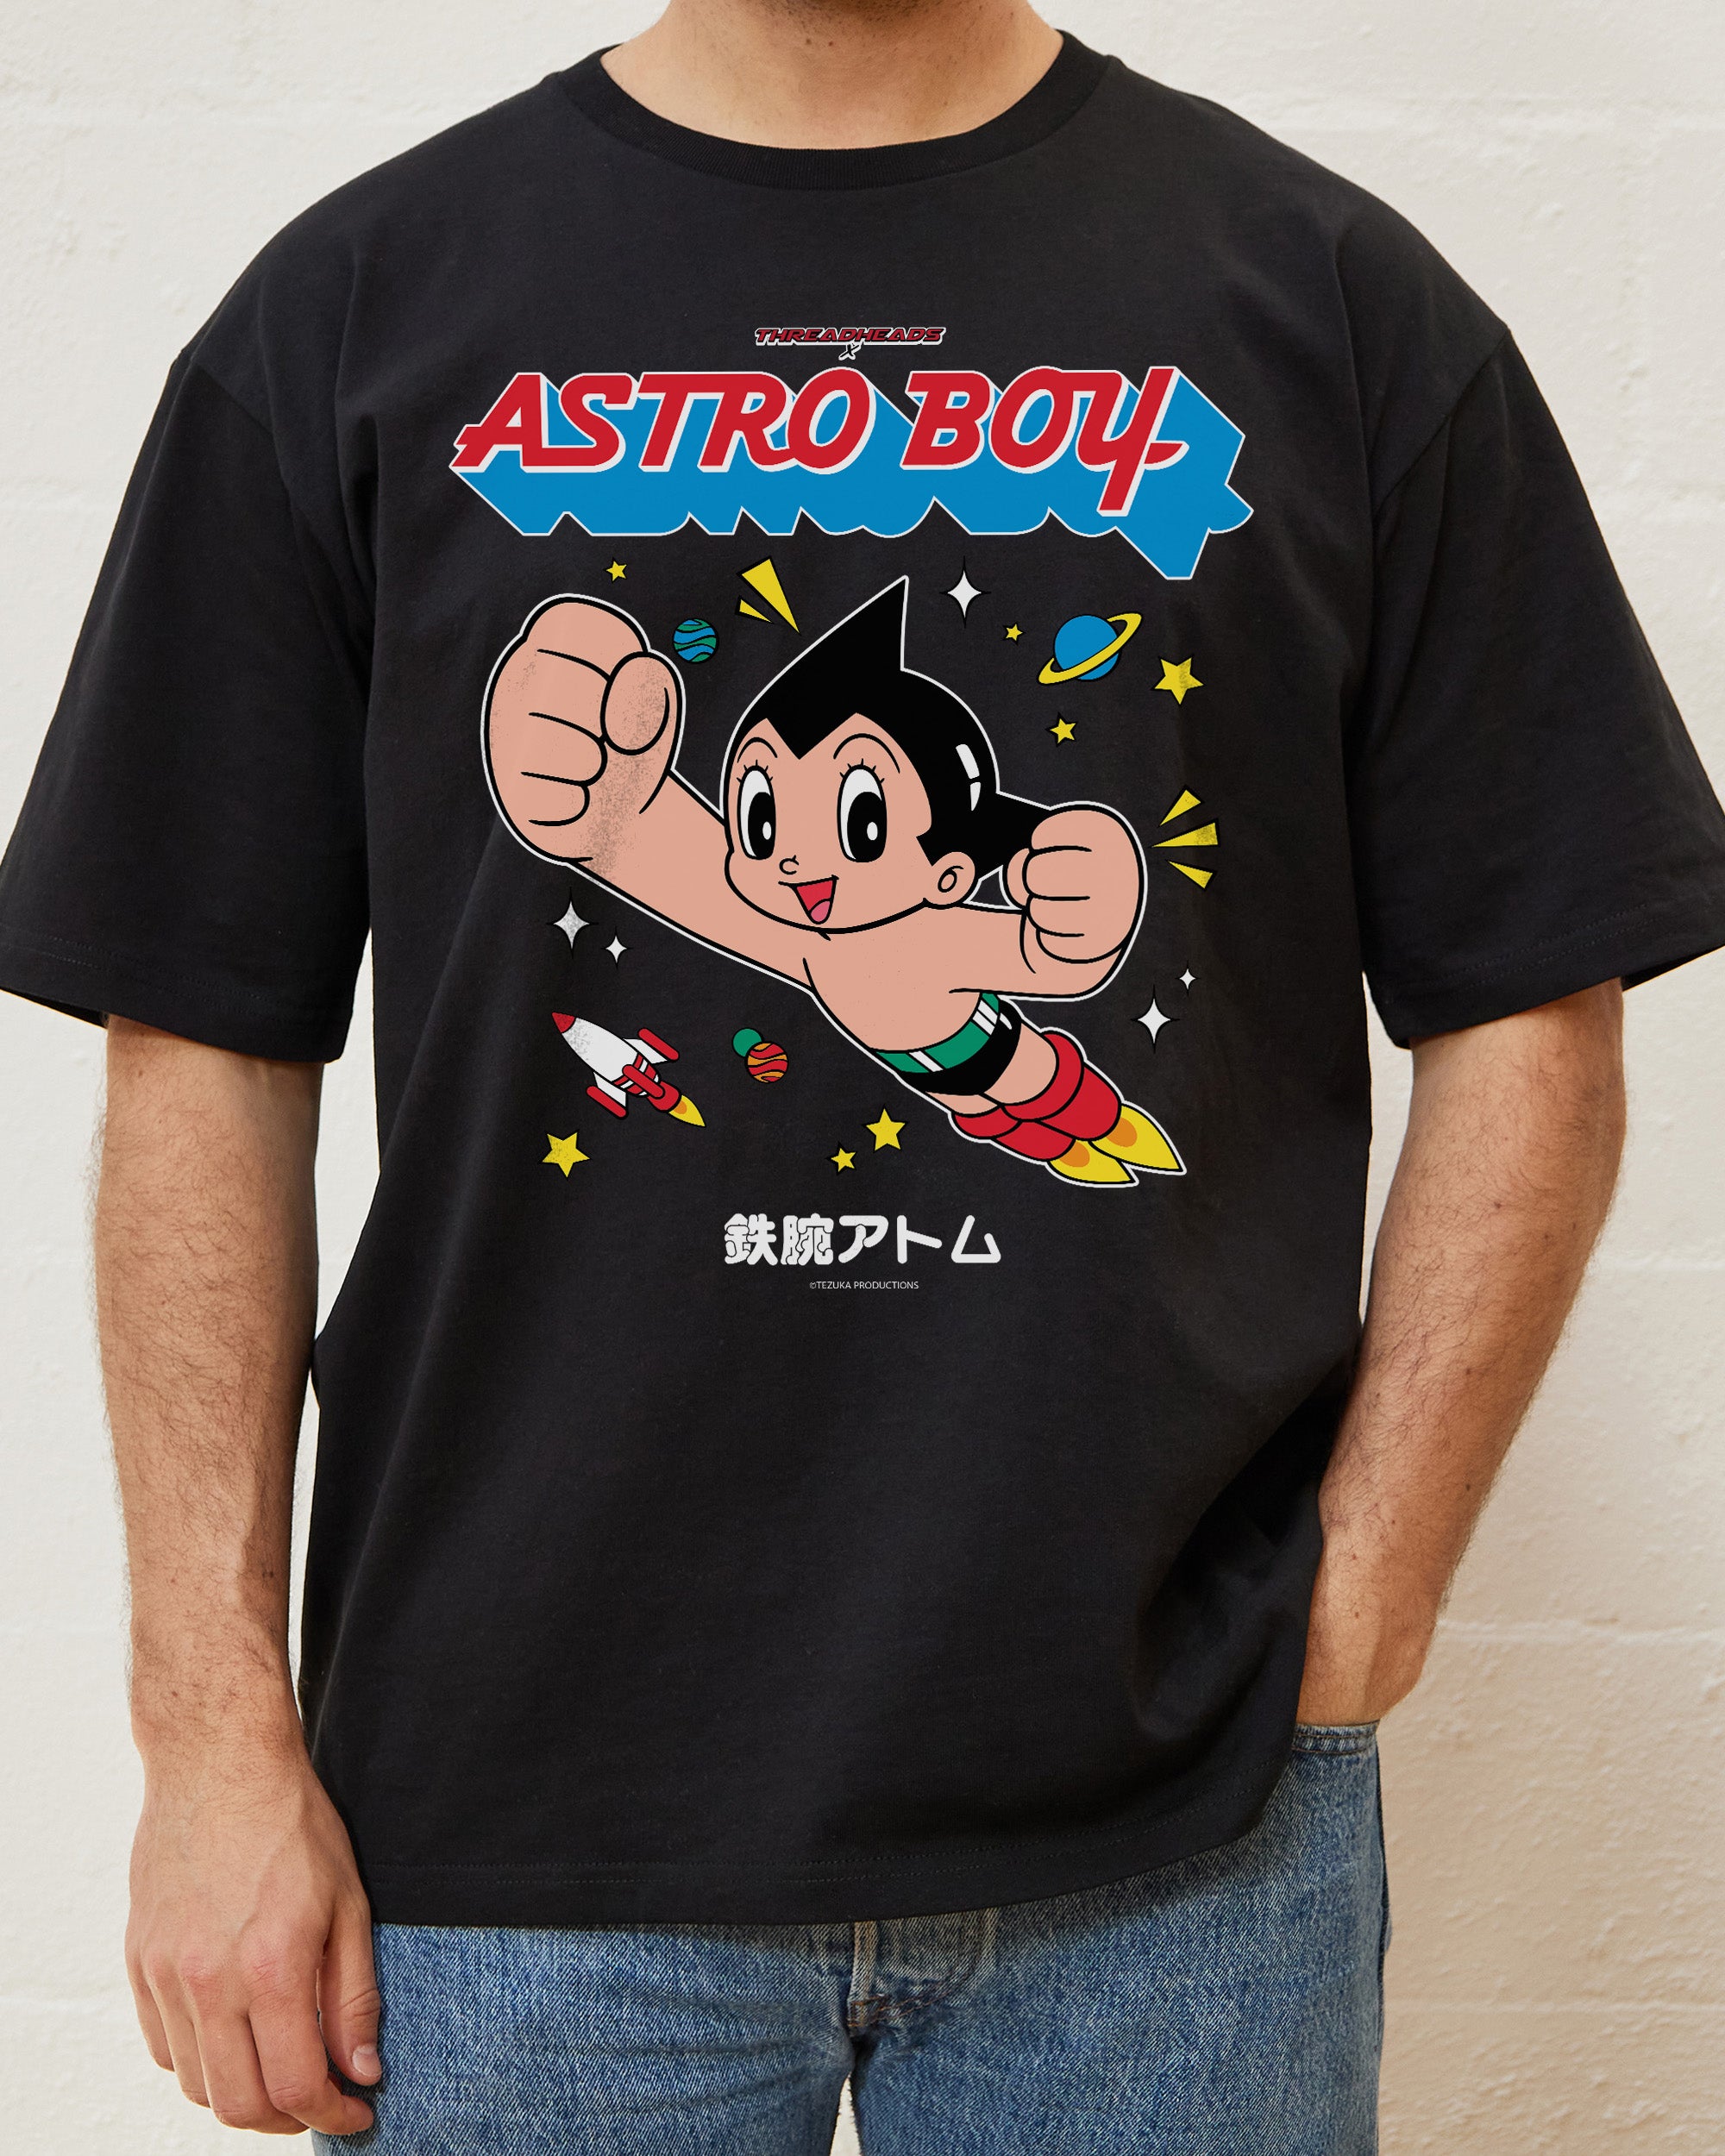 Nonsense Ninja Shinobi Geeky Nerdy Men's Graphic T Shirt Tees